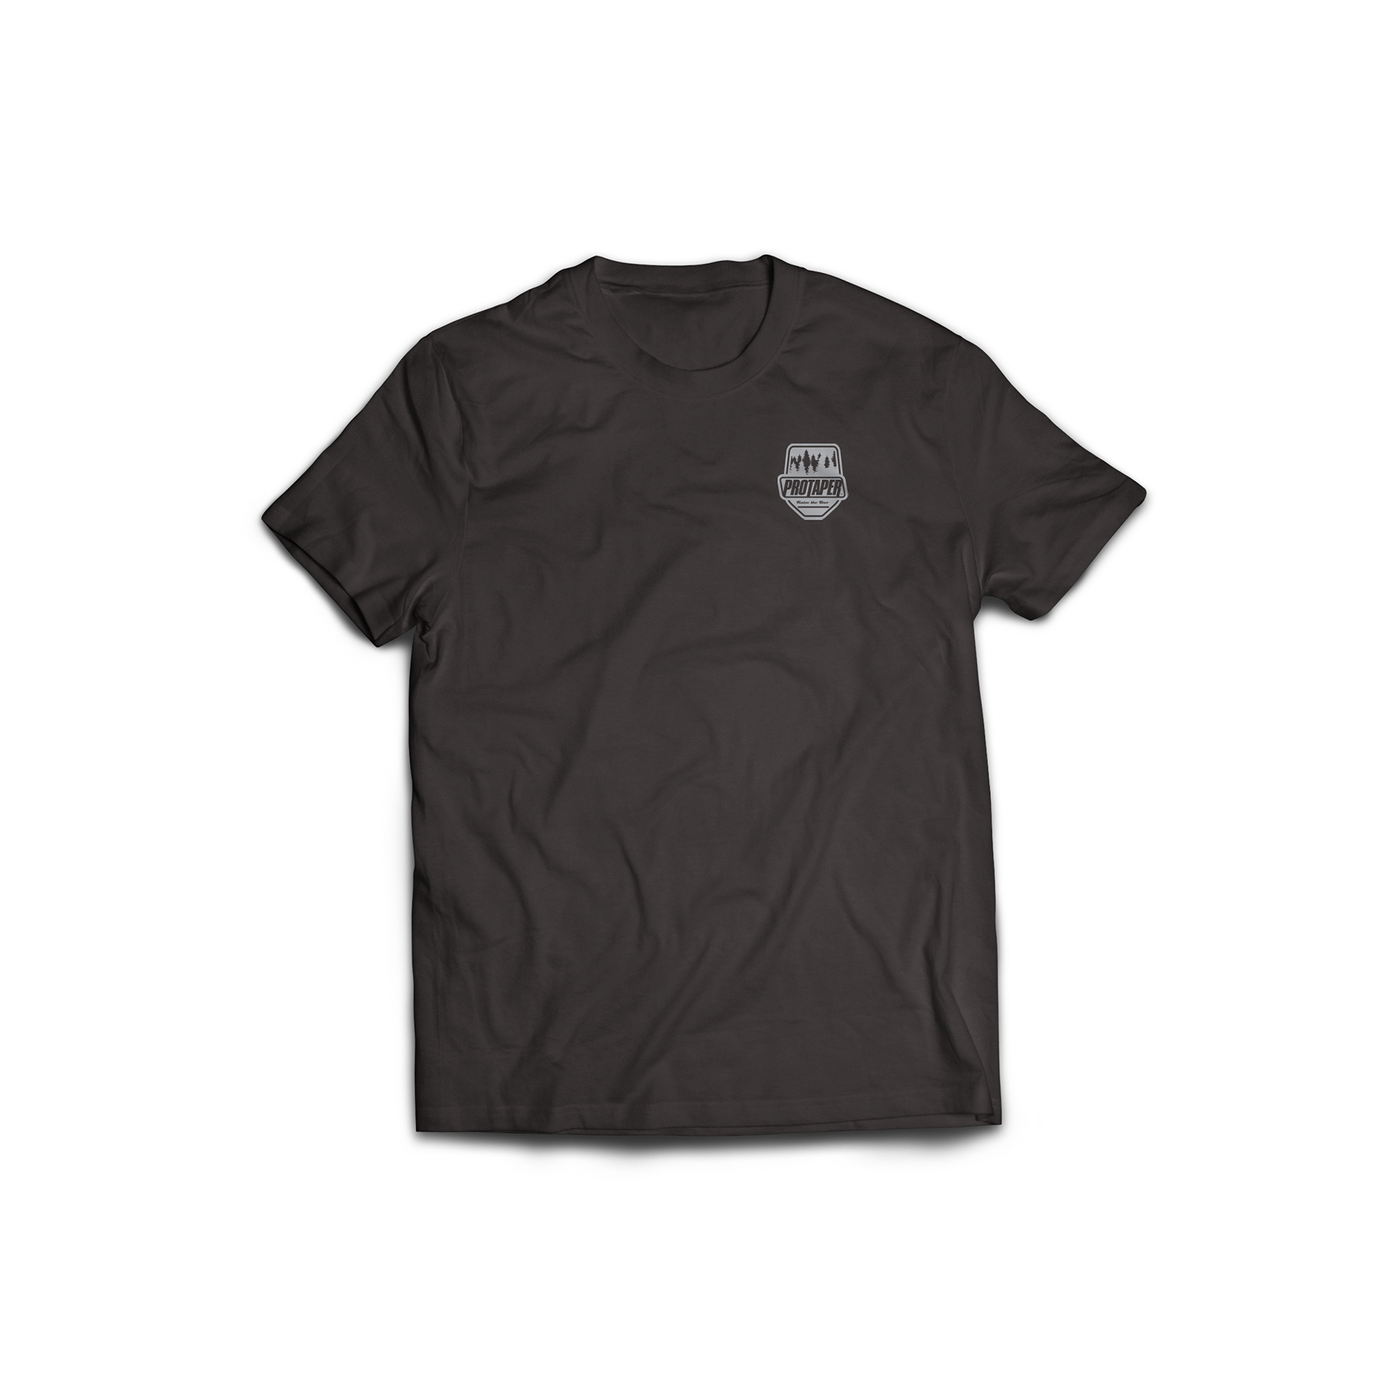 ProTaper MTB | ProTaper Trail T-Shirt - ProTaper Dark / Small